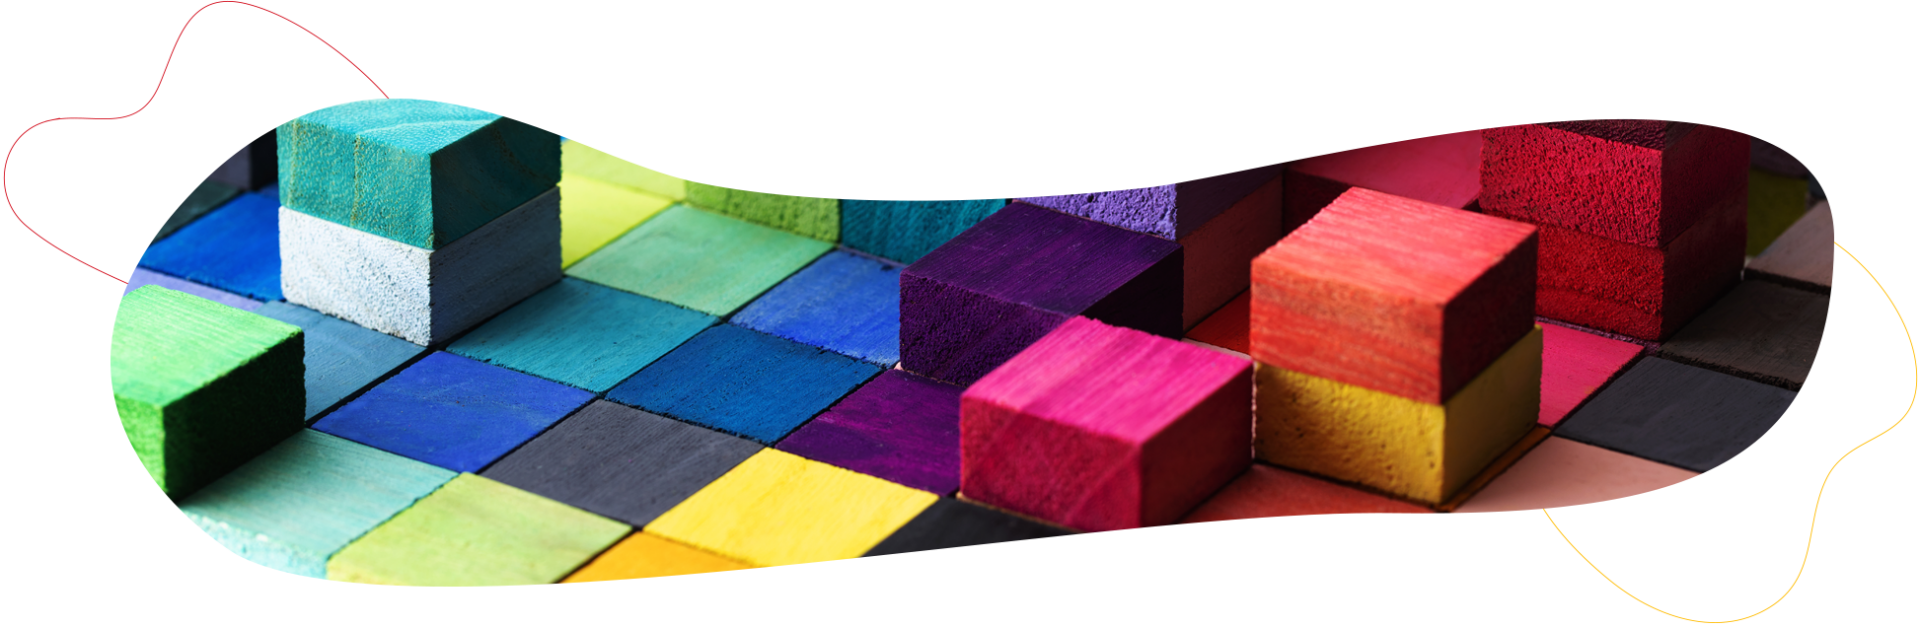 image représentant des cubes de toutes les couleurs assemblés ensemble